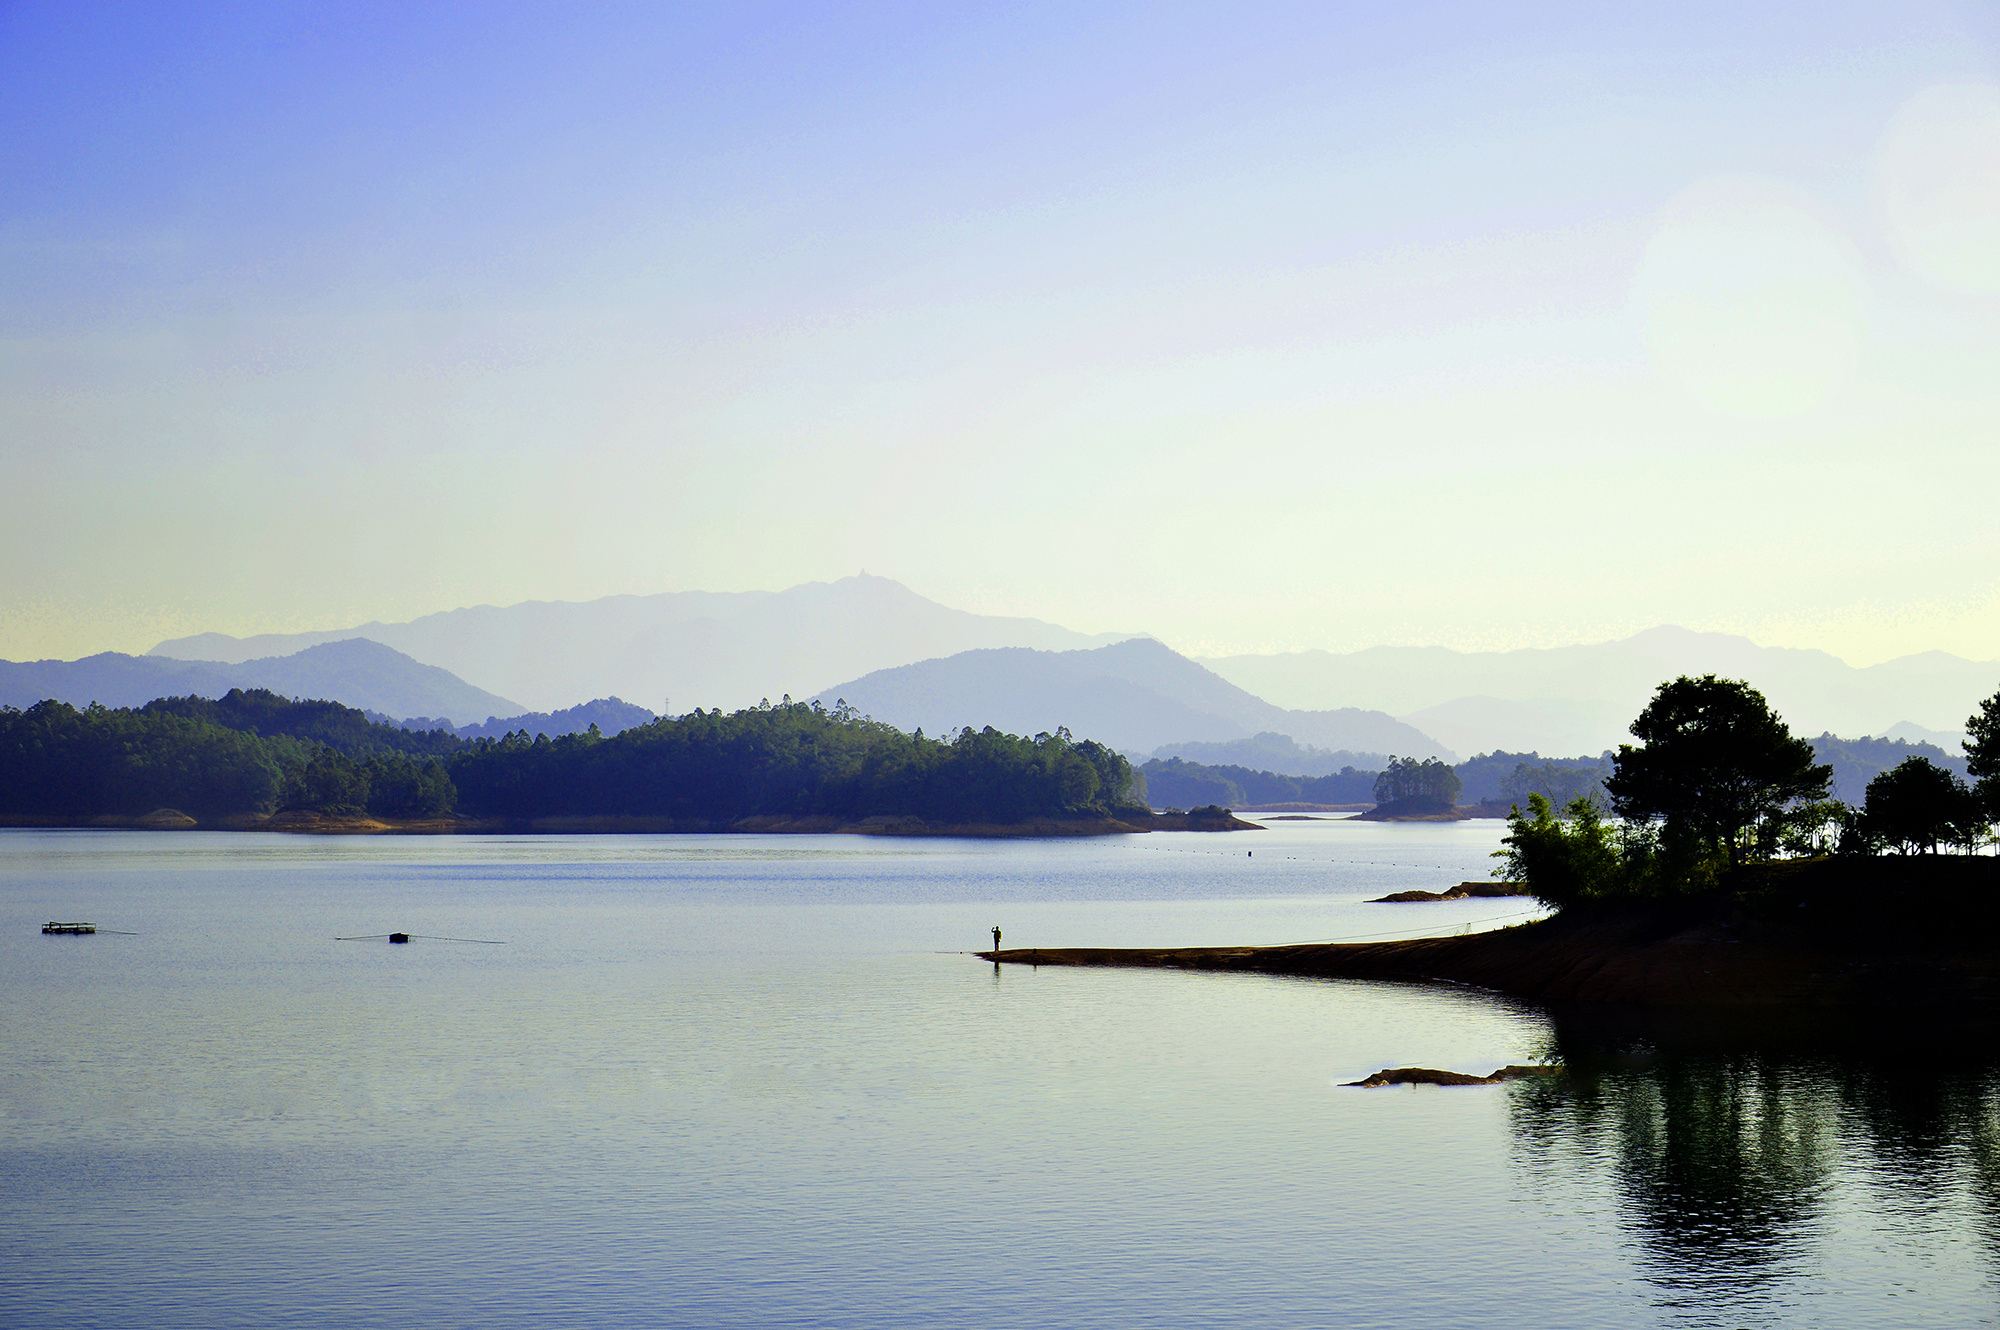 青山碧水万绿湖 舒缓悠扬的纯净自然之旅(2)_旅游摄影-蜂鸟网